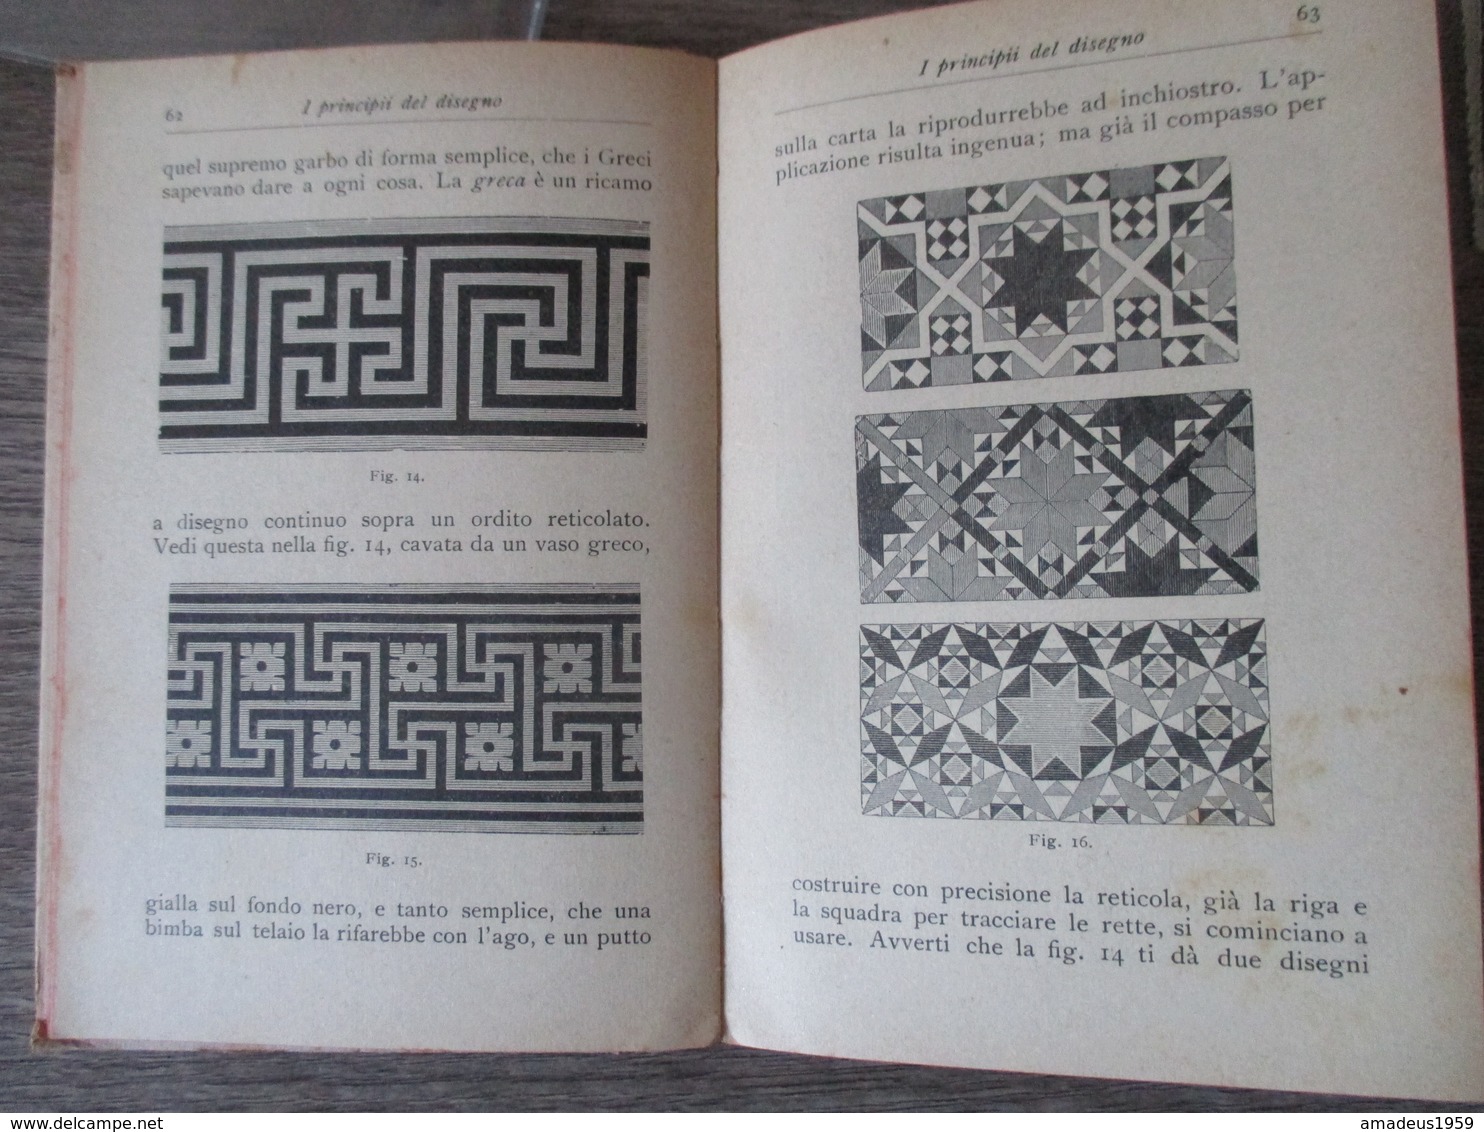 Manuale Hoepli 1925 I Principi Del Disegno - Arte, Architettura